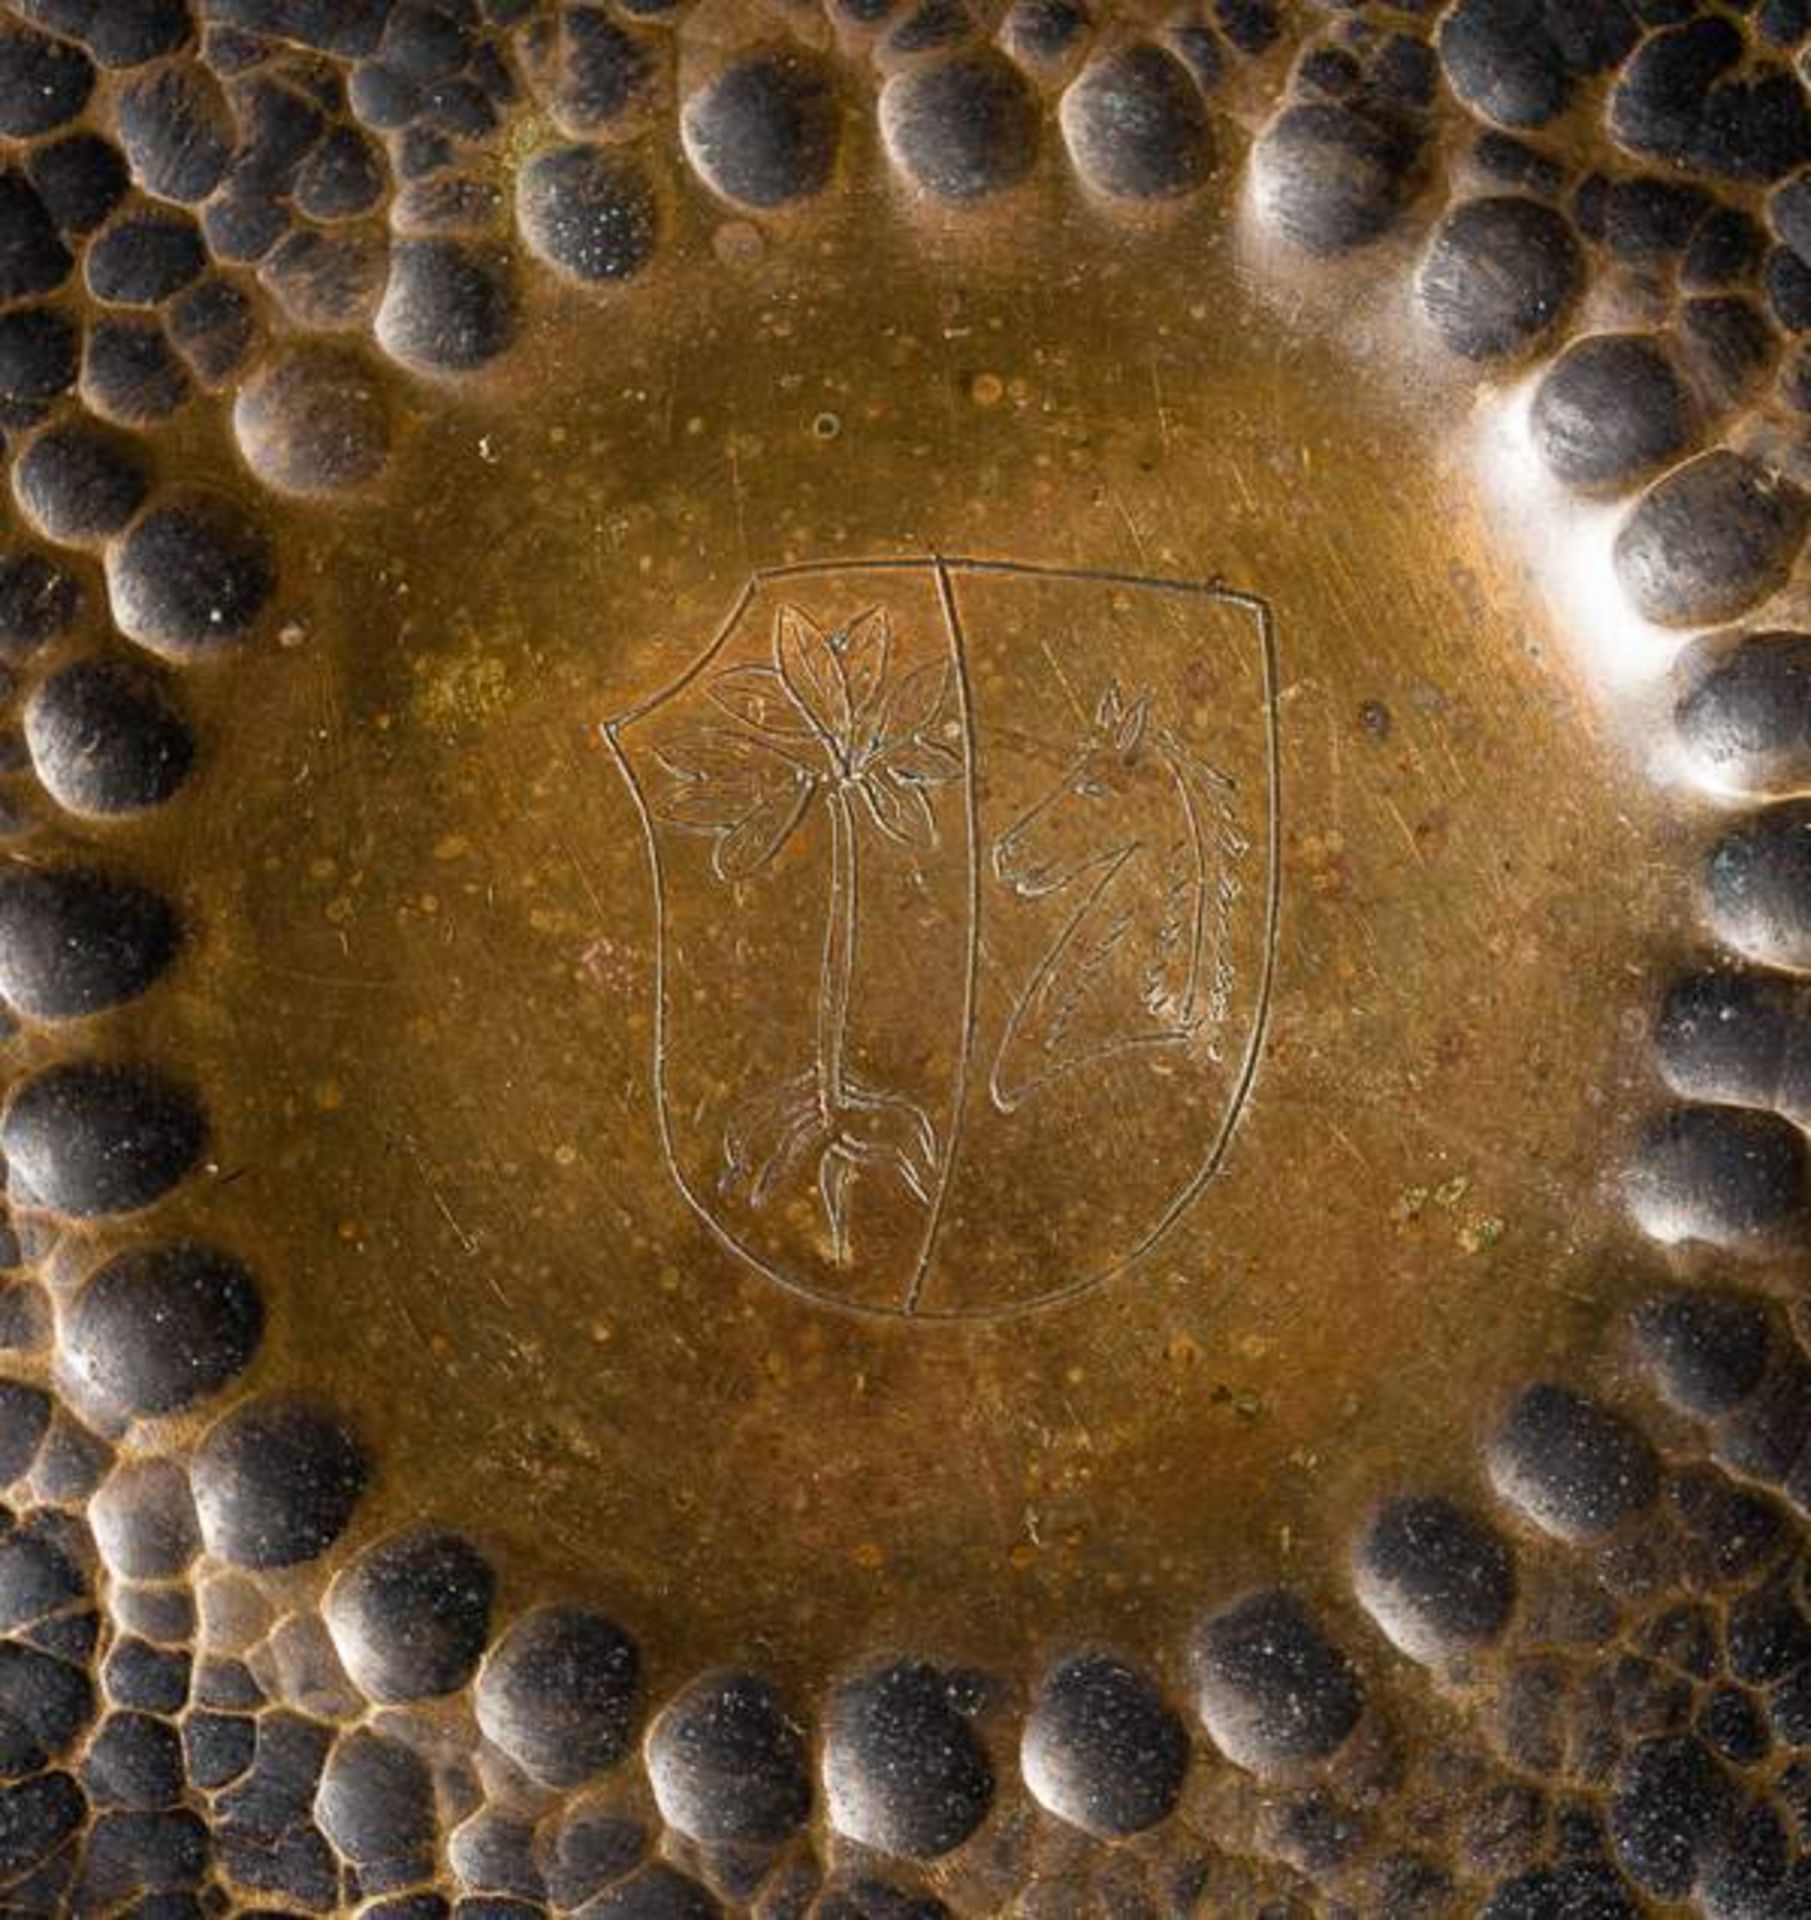 GROSSER BRONZEGONG Gelbbronze, Südostasien, vermutlich um 1900 Durchmesser 33 cm Die große - Image 3 of 3